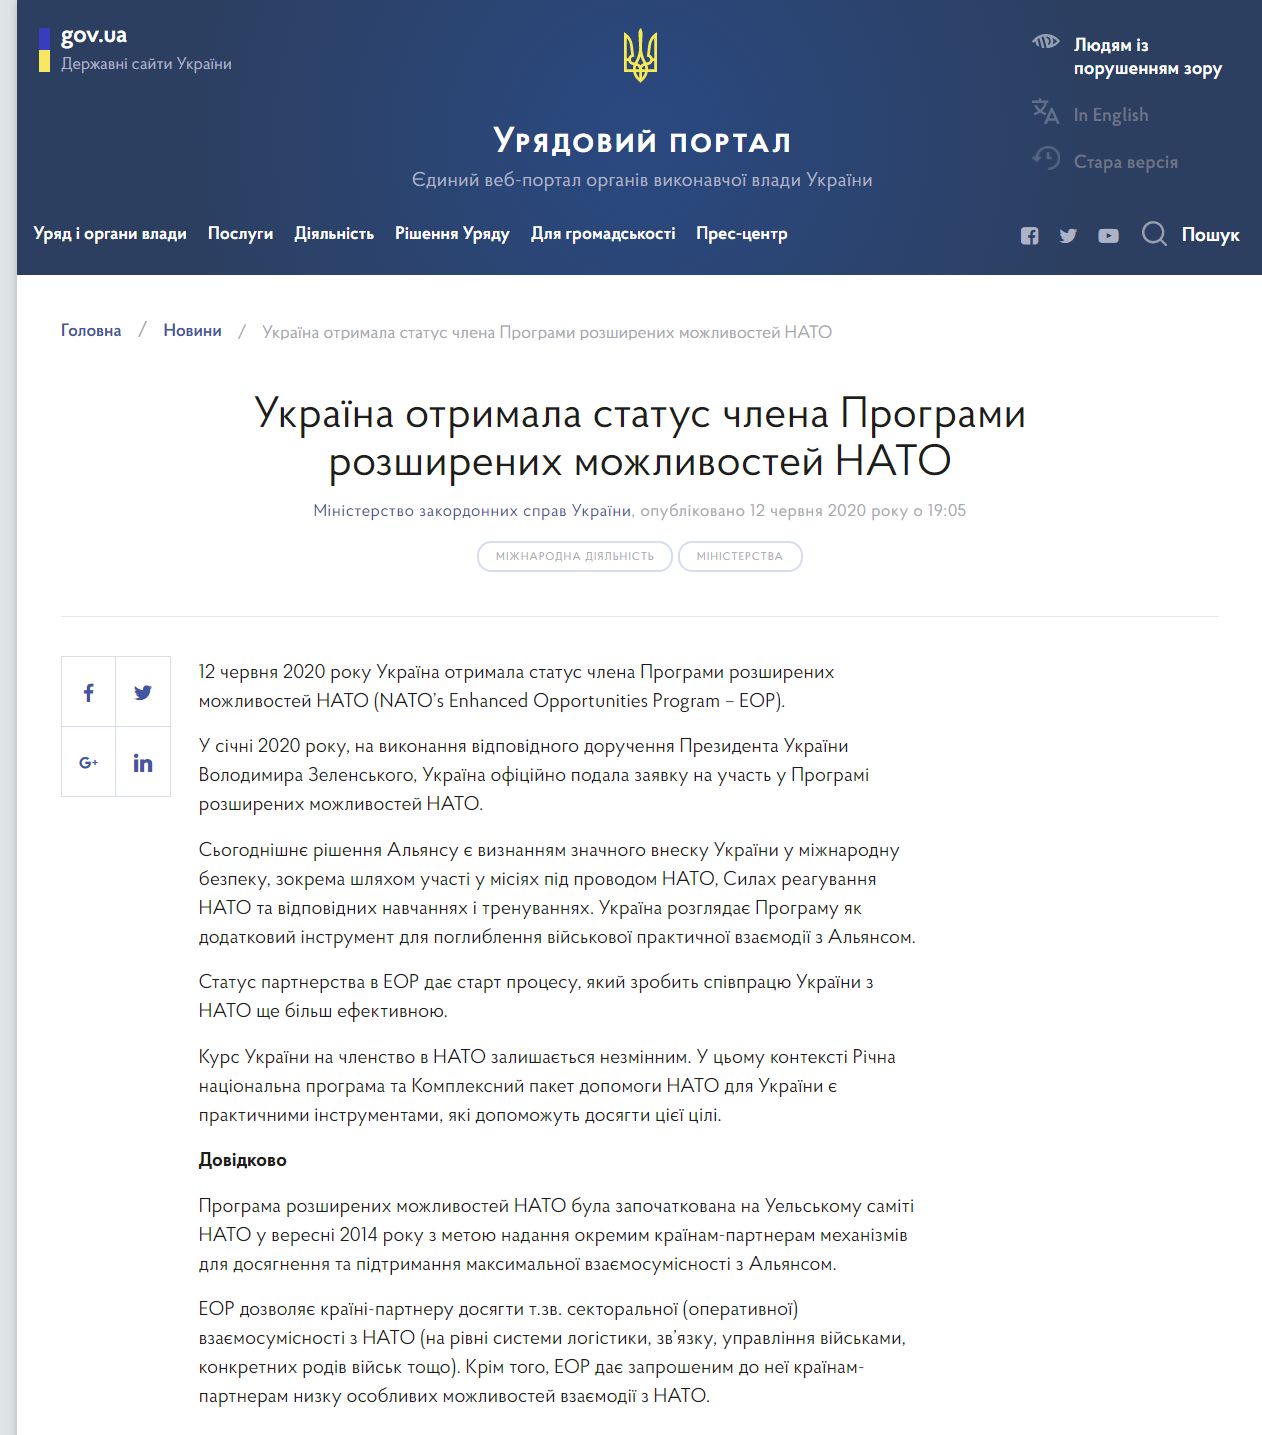 https://www.kmu.gov.ua/news/ukrayina-otrimala-status-chlena-programi-rozshirenih-mozhlivostej-nato